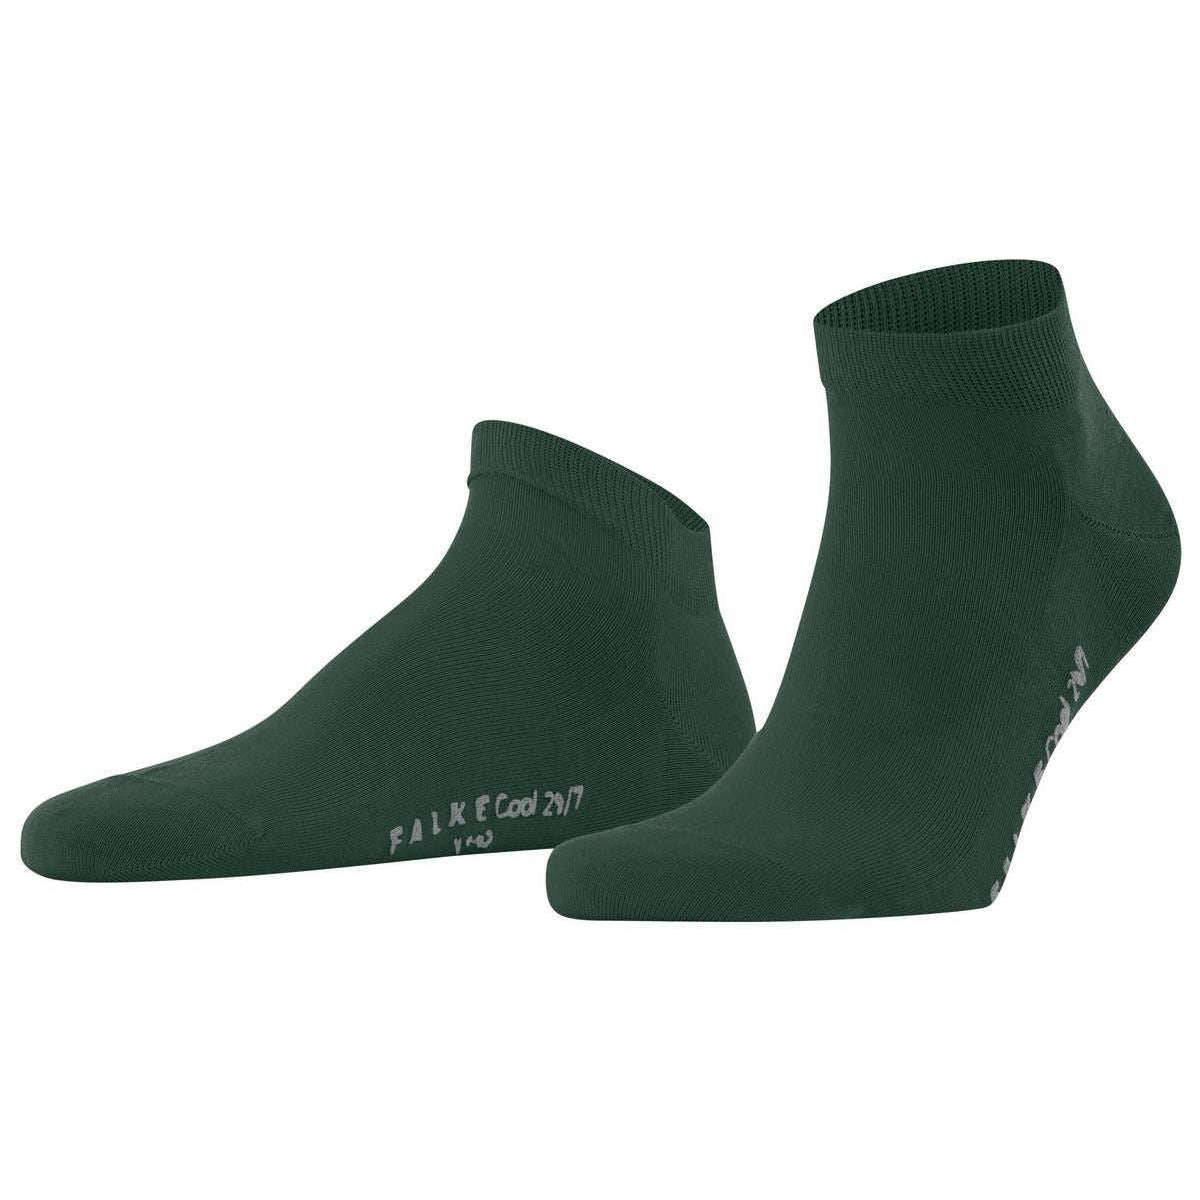 Falke Cool 24/7 Sneaker Socks - Hunter Green - Medium - 8.5-9.5 UK | 9.5-10.5 US | 43-44 EUR